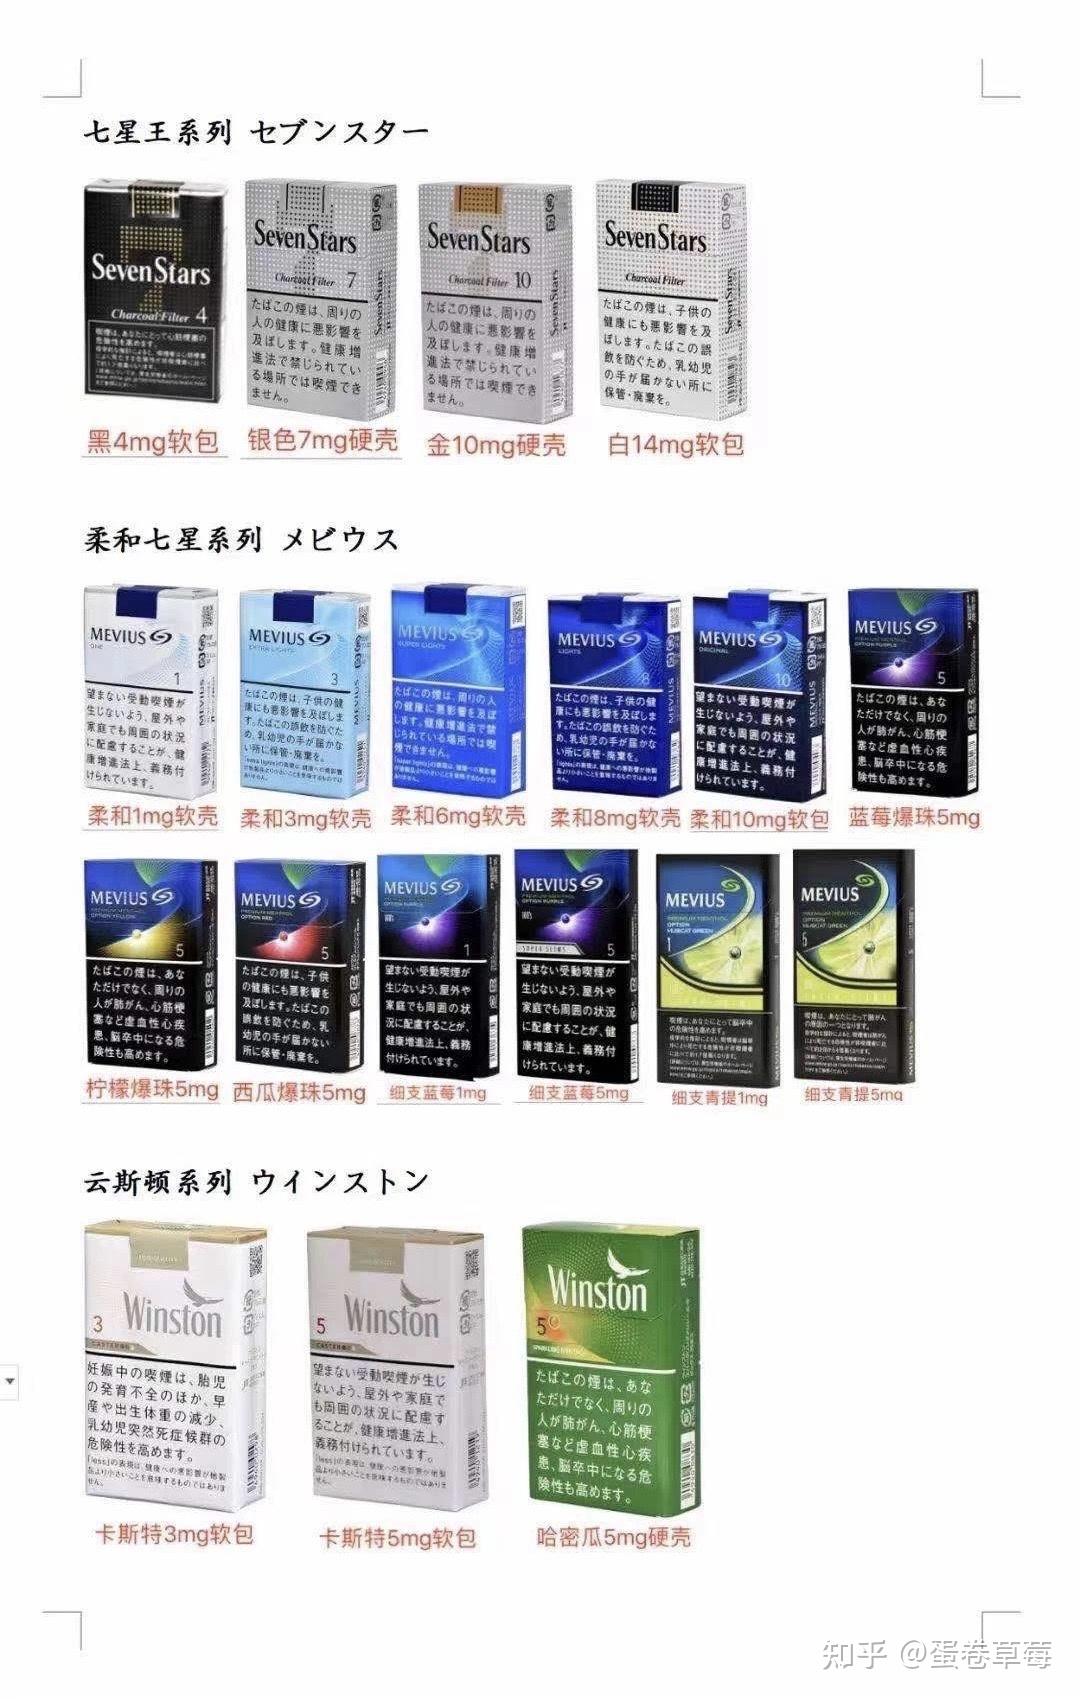 日本七星全系列介绍除了万宝路之外最畅销的外烟之一